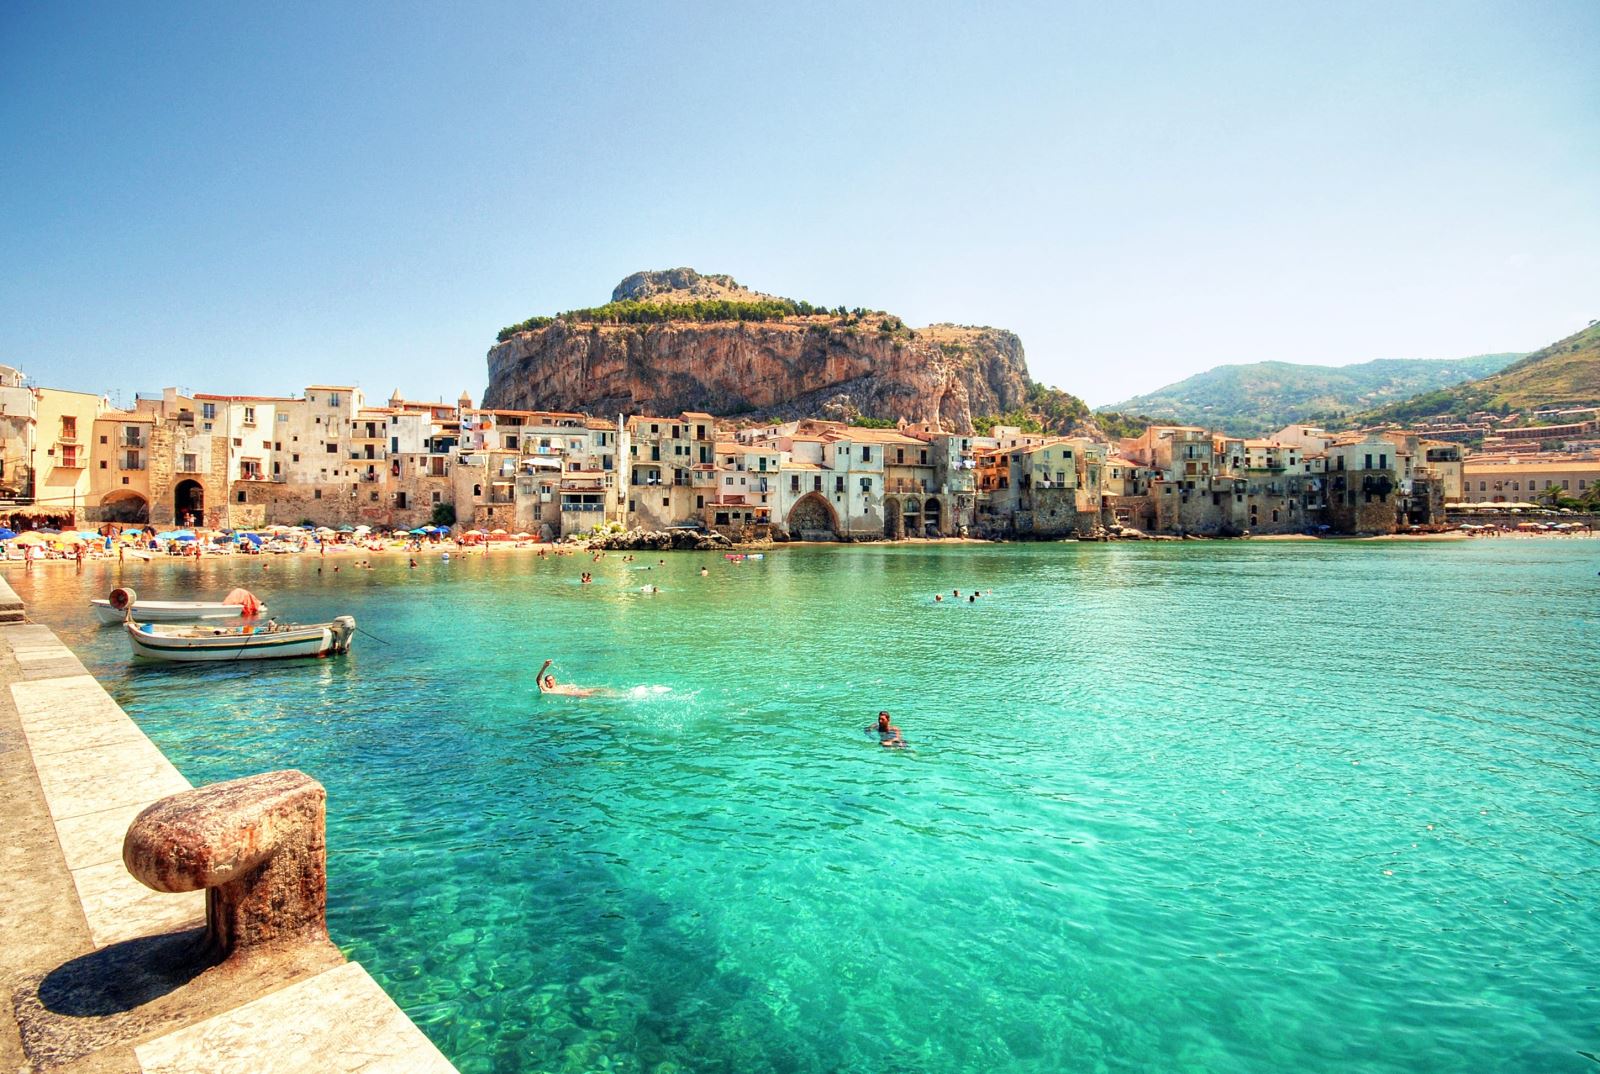  Dòng nước xanh mướt tại đảo Silicy (Italy). Ảnh: Lonely Planet